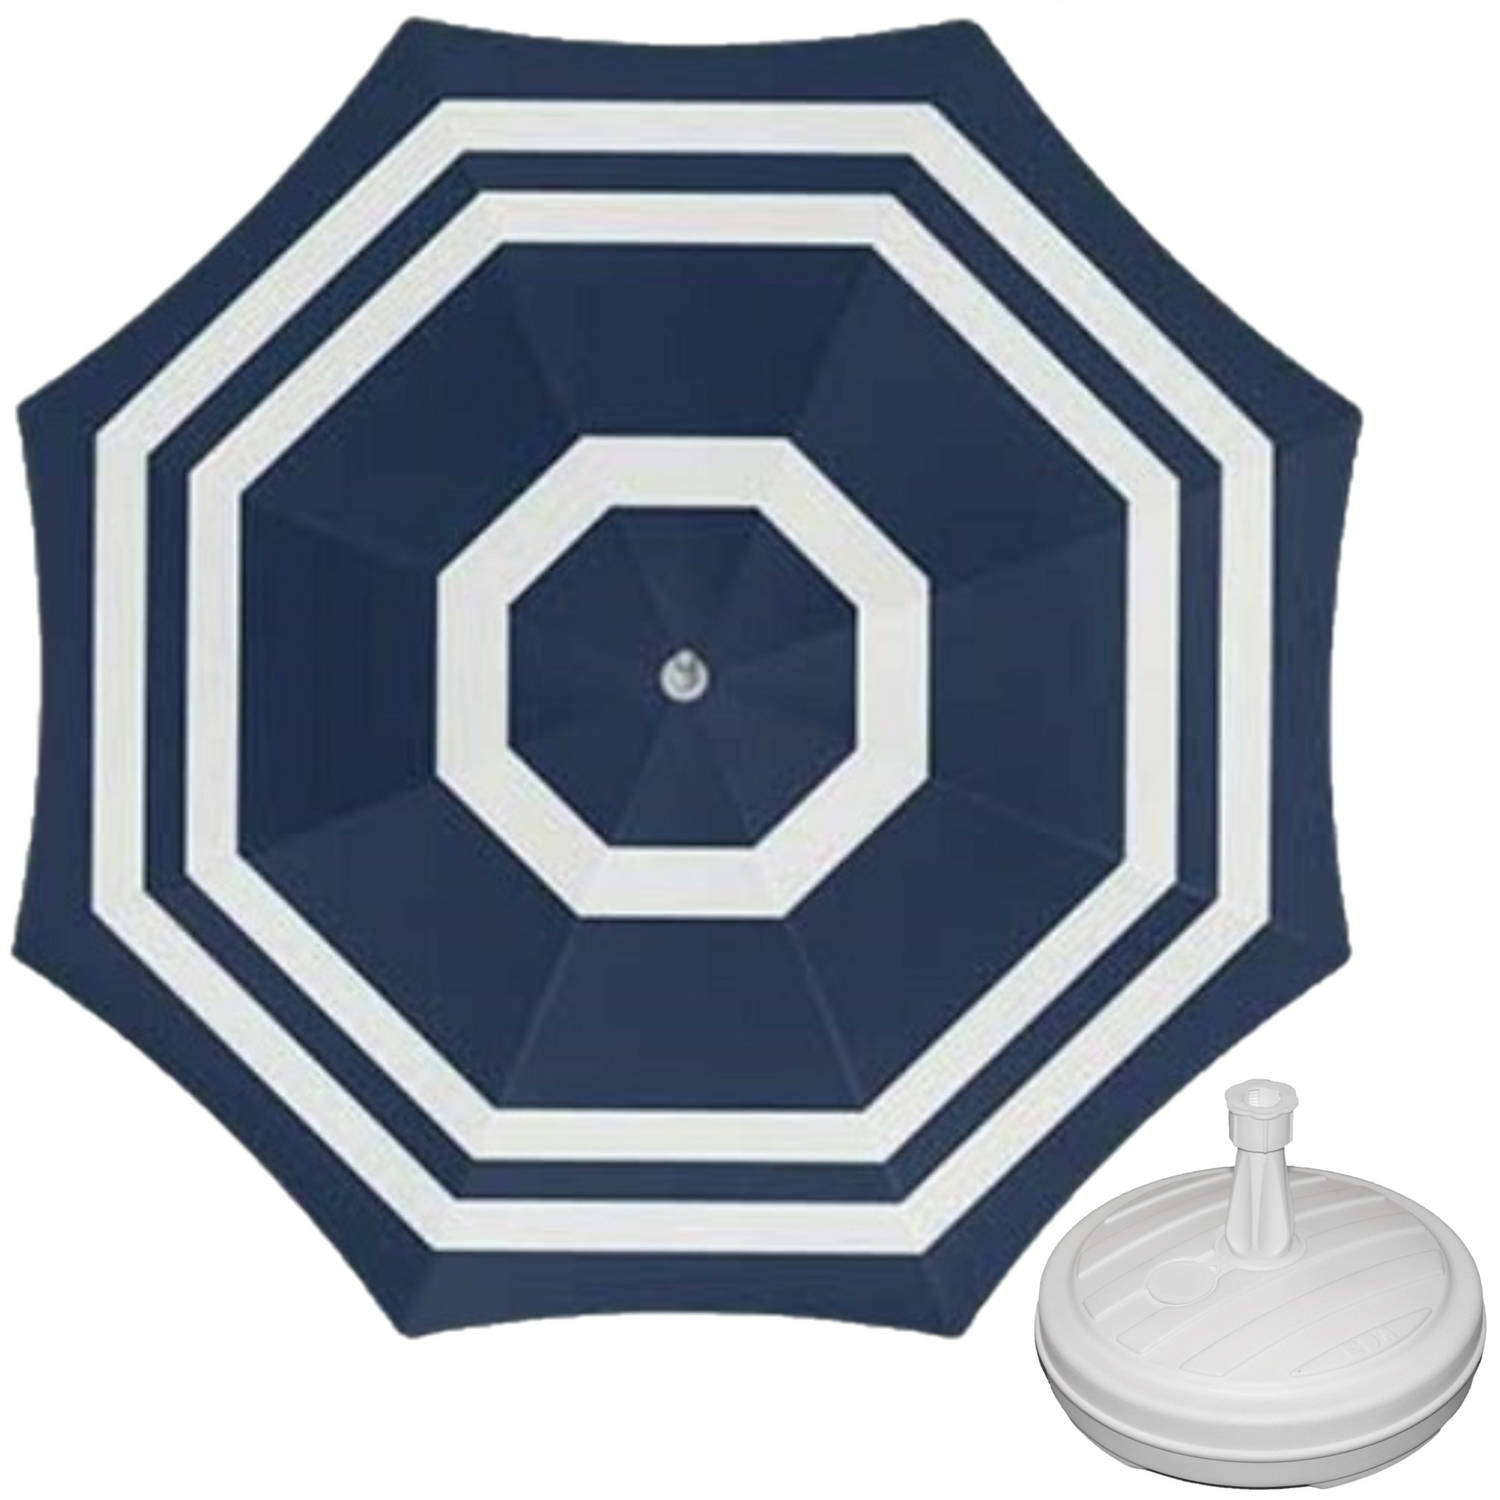 Parasol Blauw-wit D180 cm incl. draagtas parasolvoet 42 cm Parasols